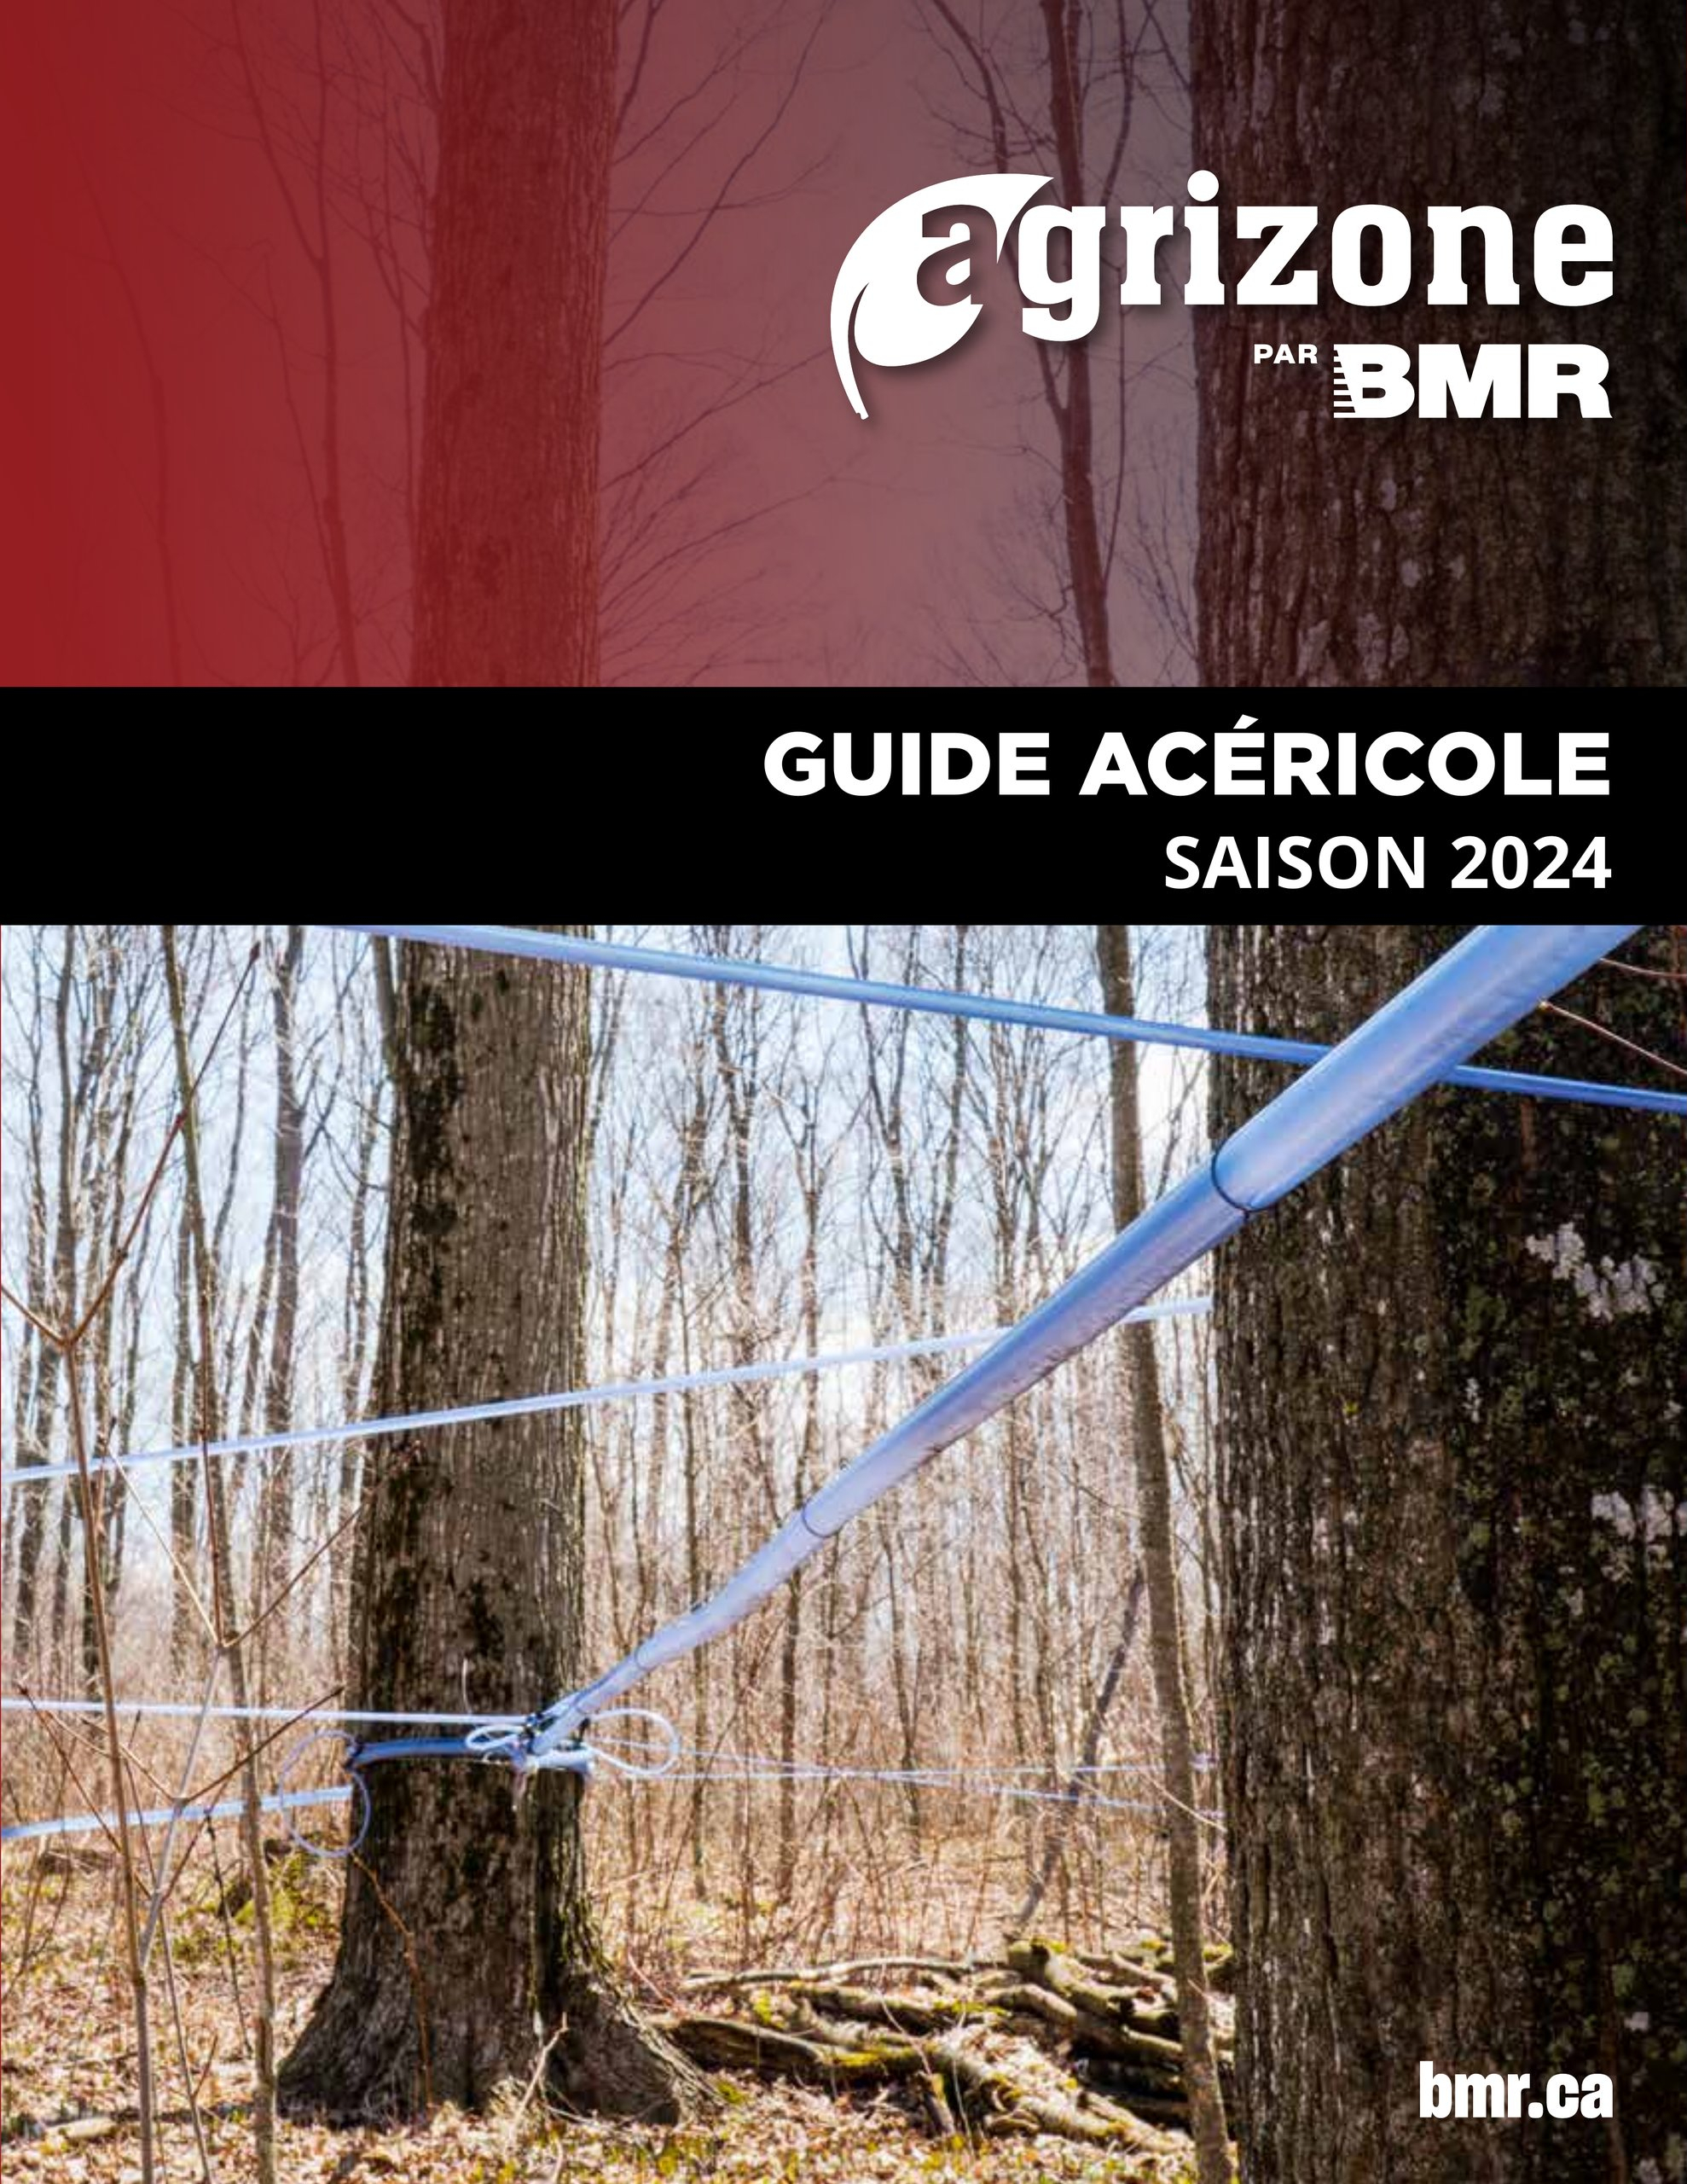 Circulaire BMR - Guide Acéricole Saison 2024 - Page 1